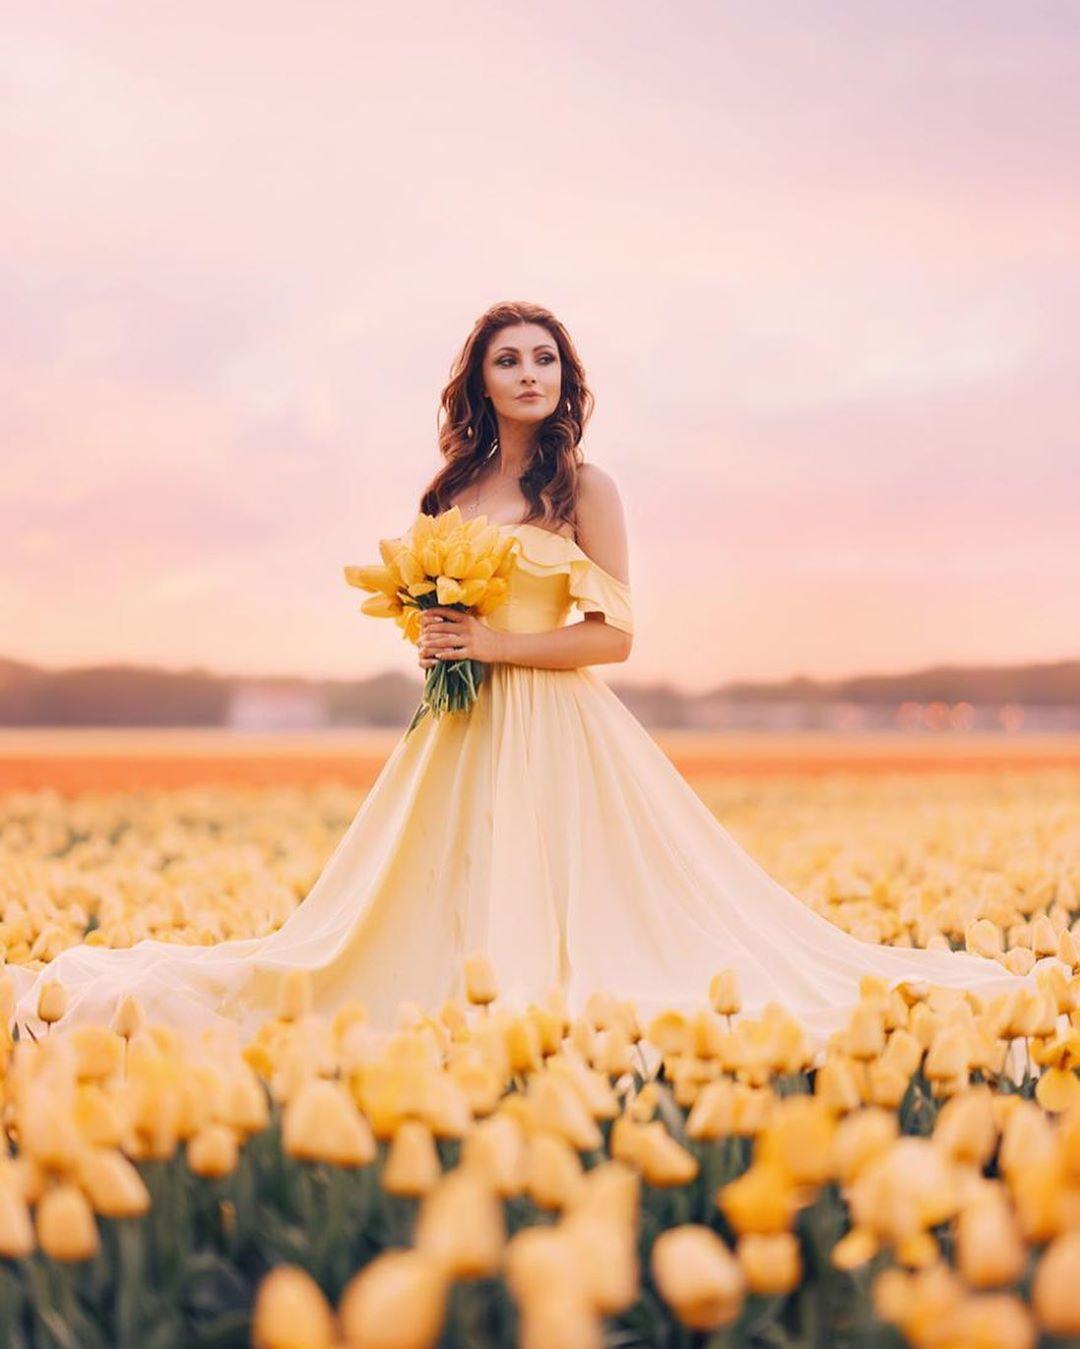 Фото Актриса Анастасия Макеева в длинном платье стоит среди желтых тюльпанов